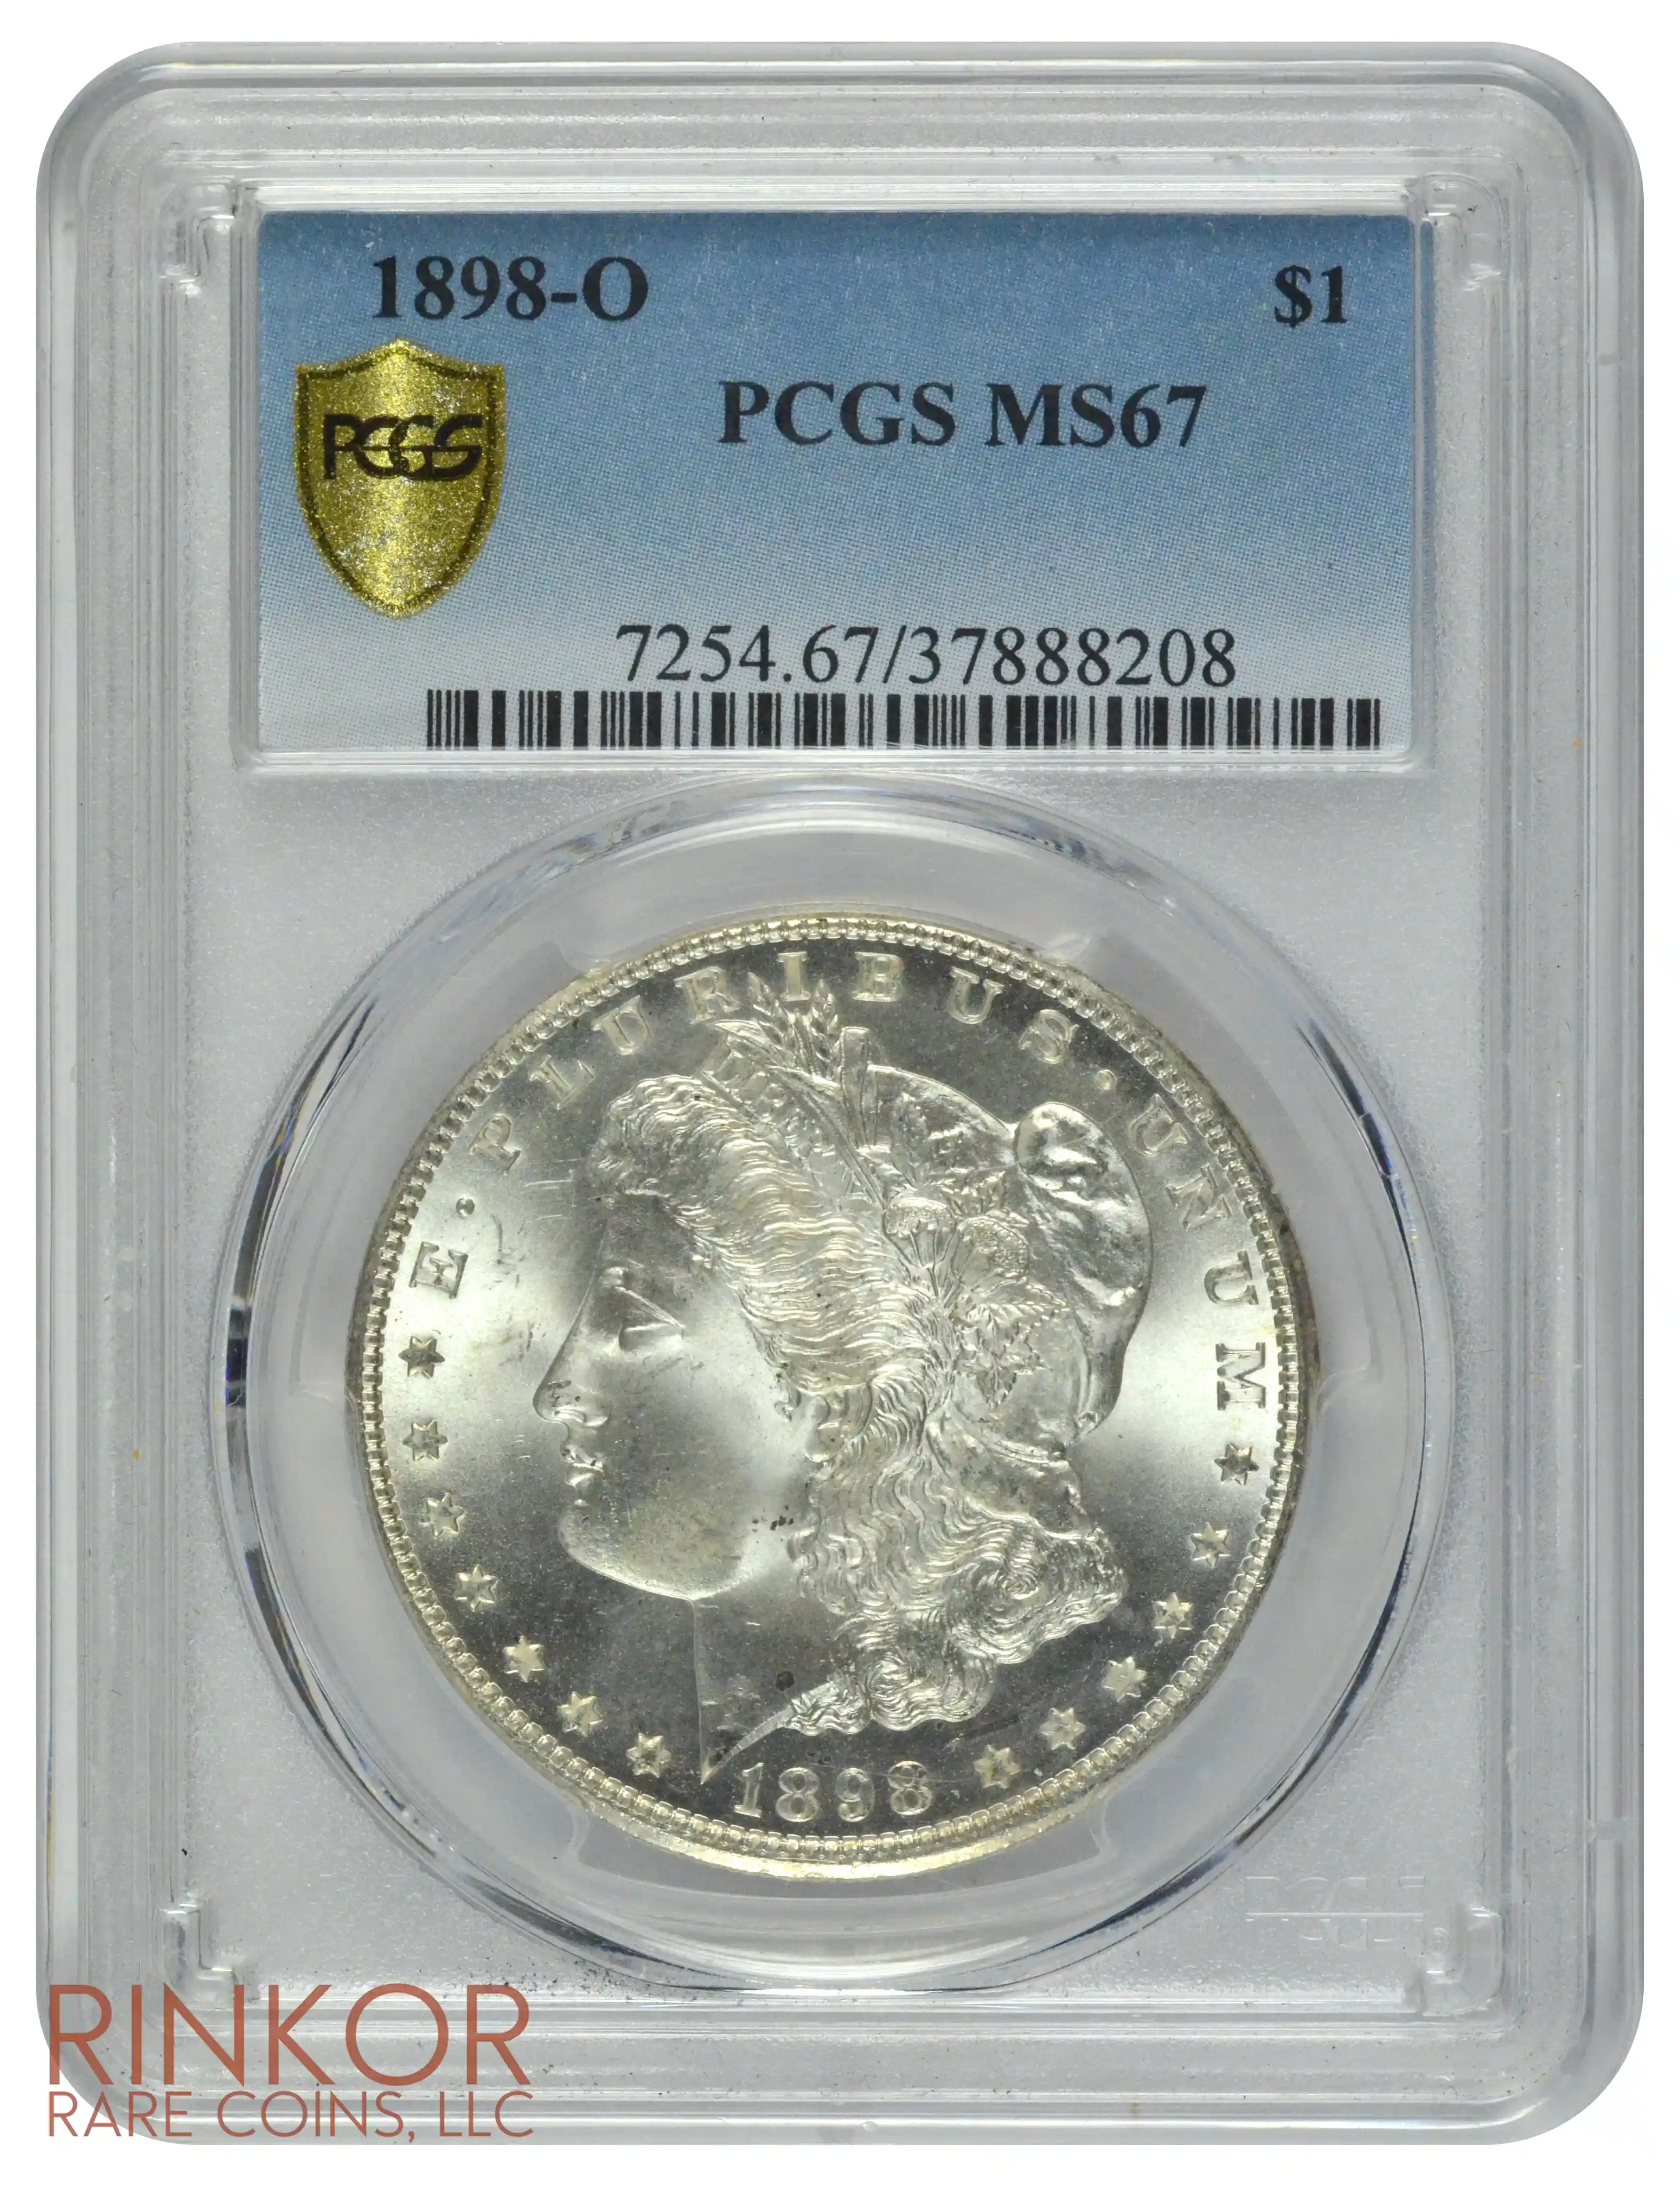 1898-O $1 PCGS MS 67